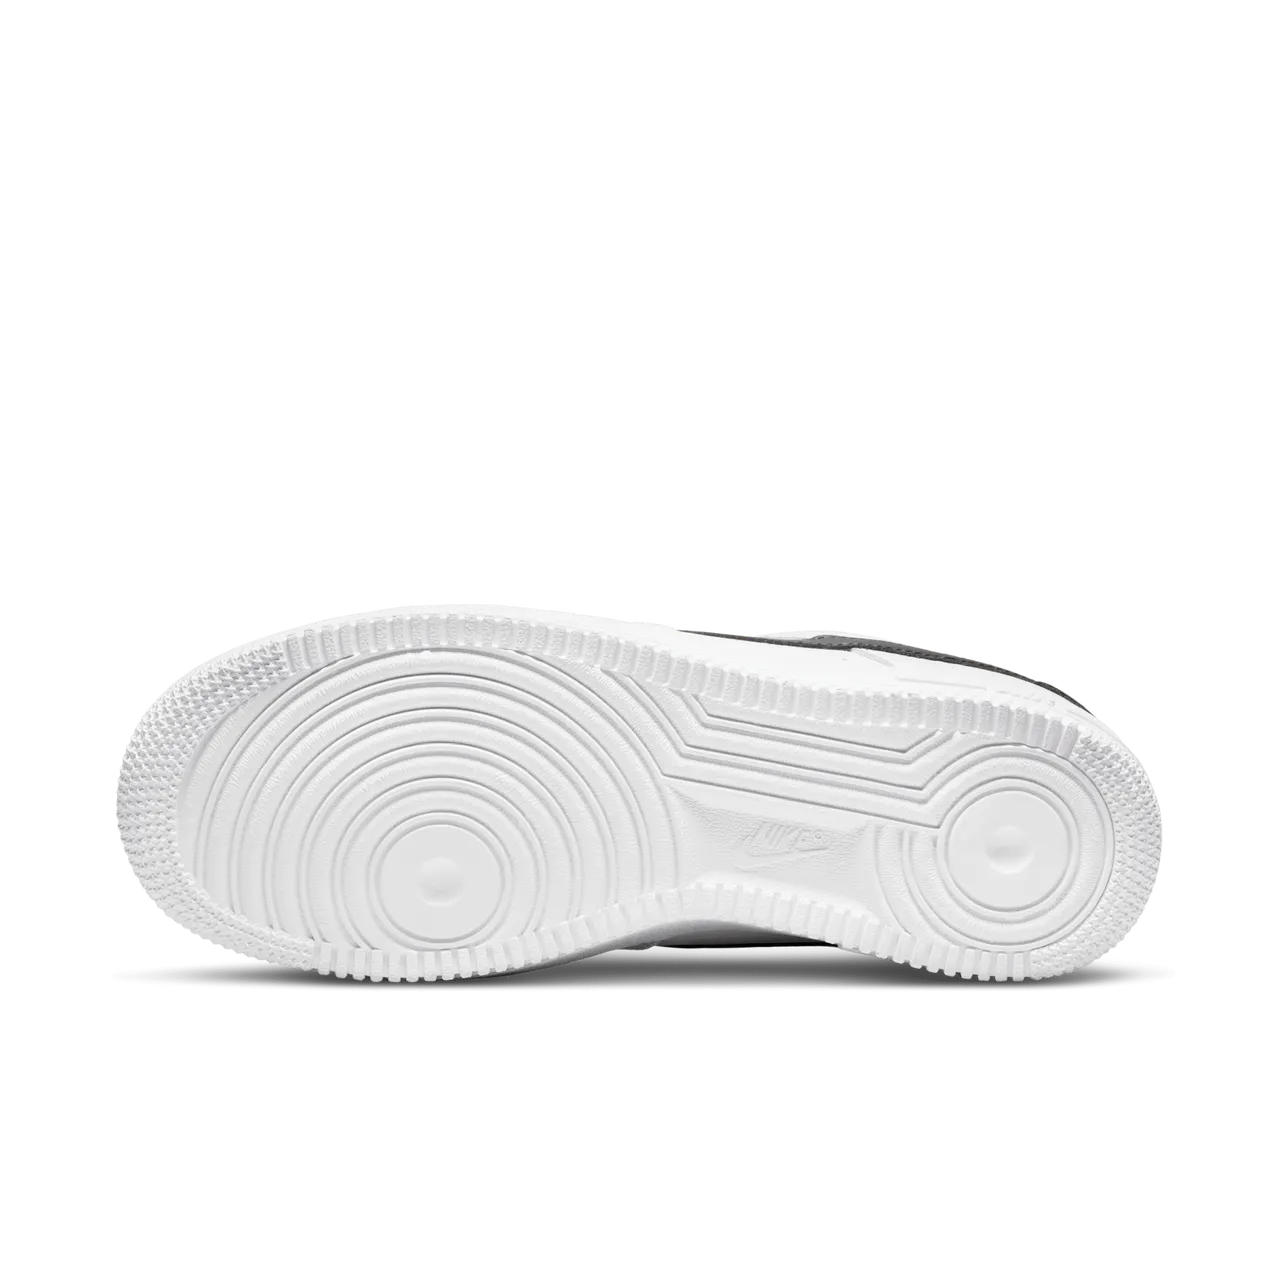 Nike Air Force 1 '07 Damenschuh - Weiß